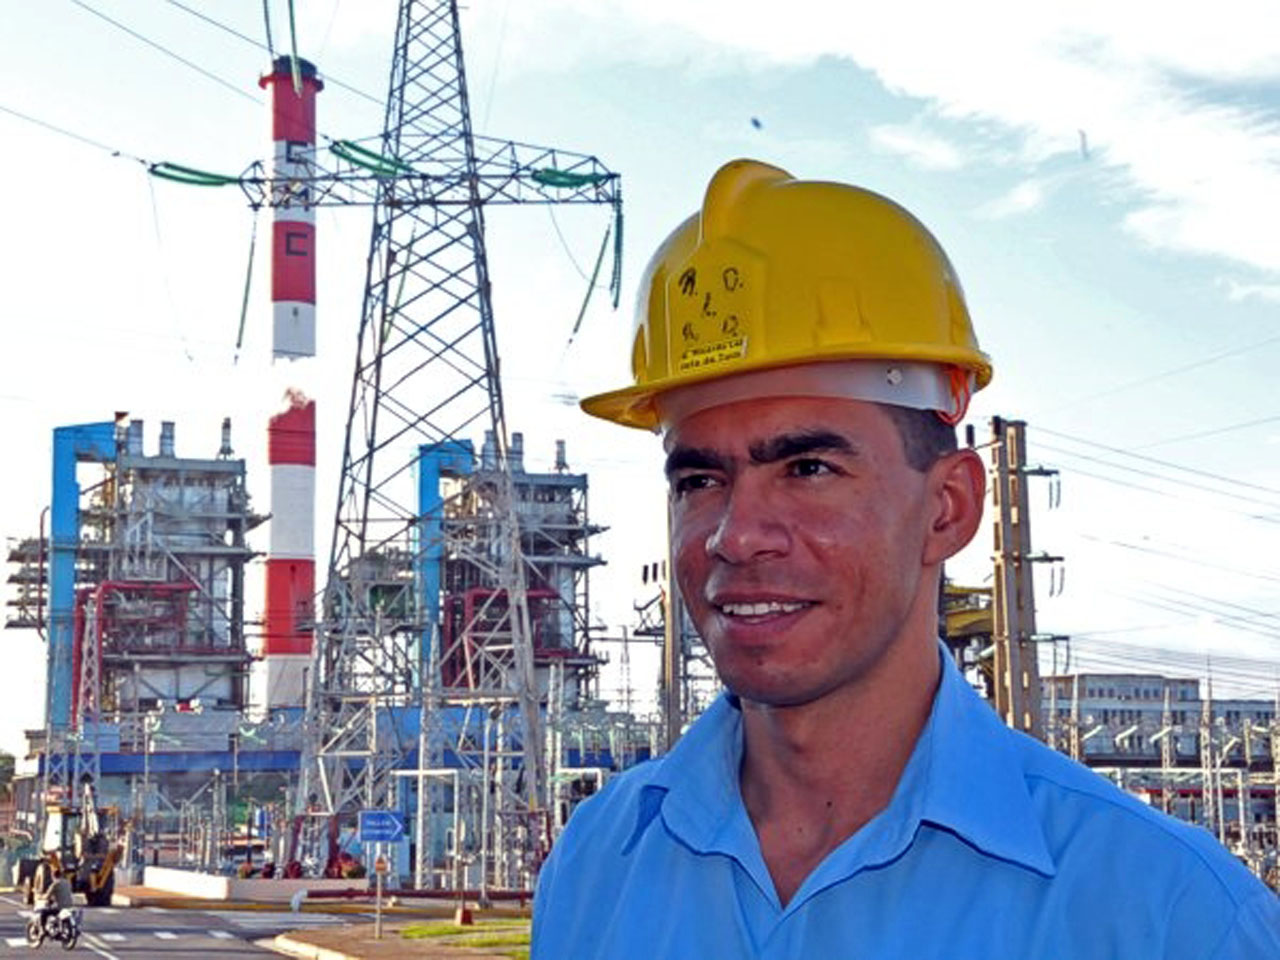 Ingeniero Denis Escalona Tillet: “Tenemos la concepción de que lo primero es el hombre”. | foto: Juan Carlos Dorado